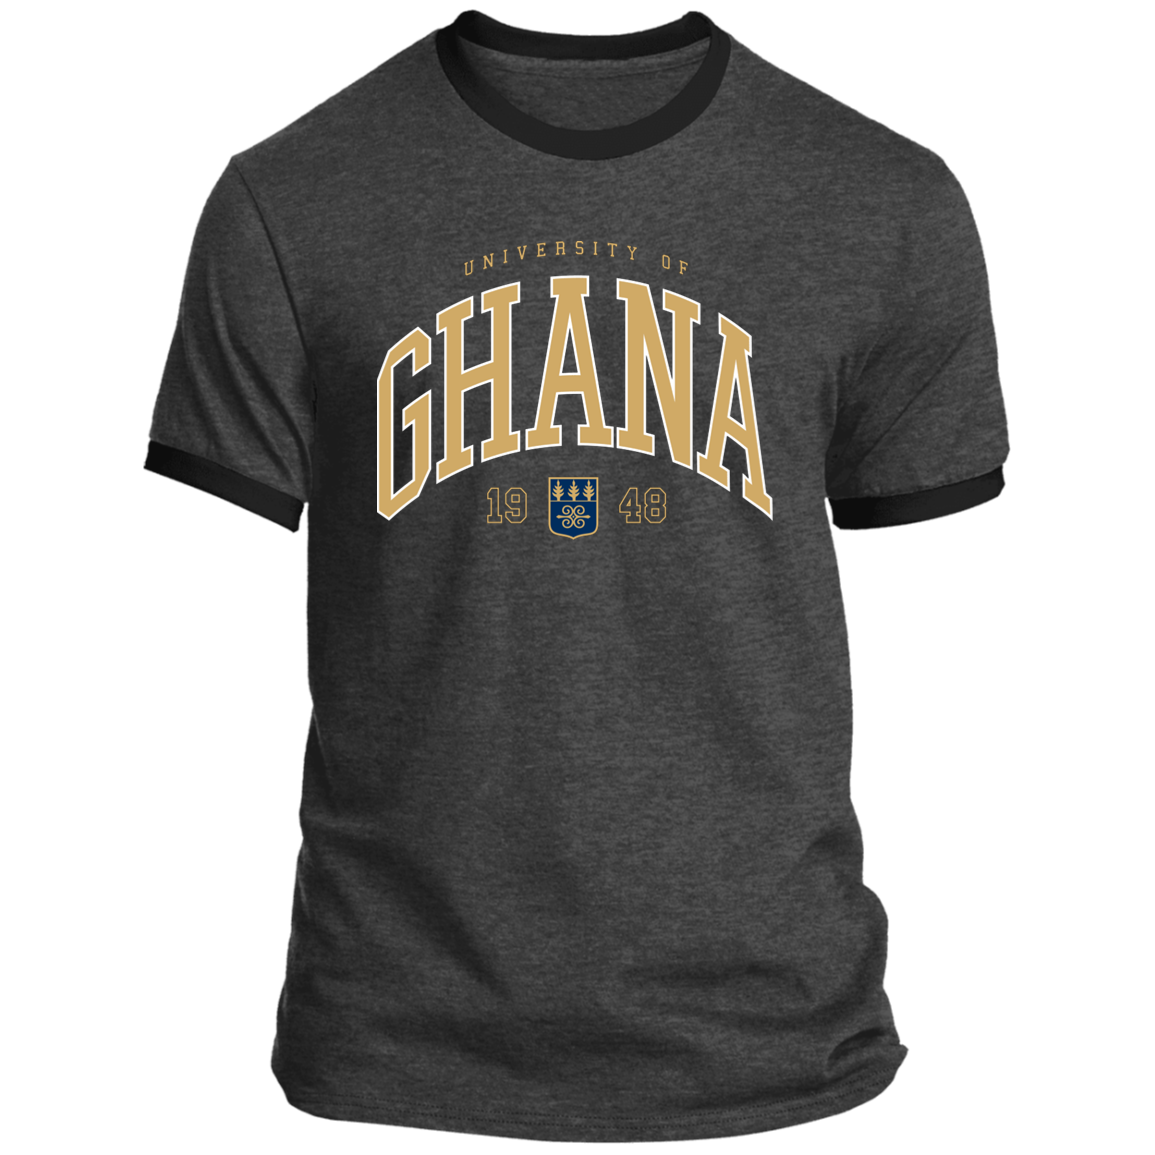 University of Ghana (UG) Accra Ringer T-Shirt (Unisex)